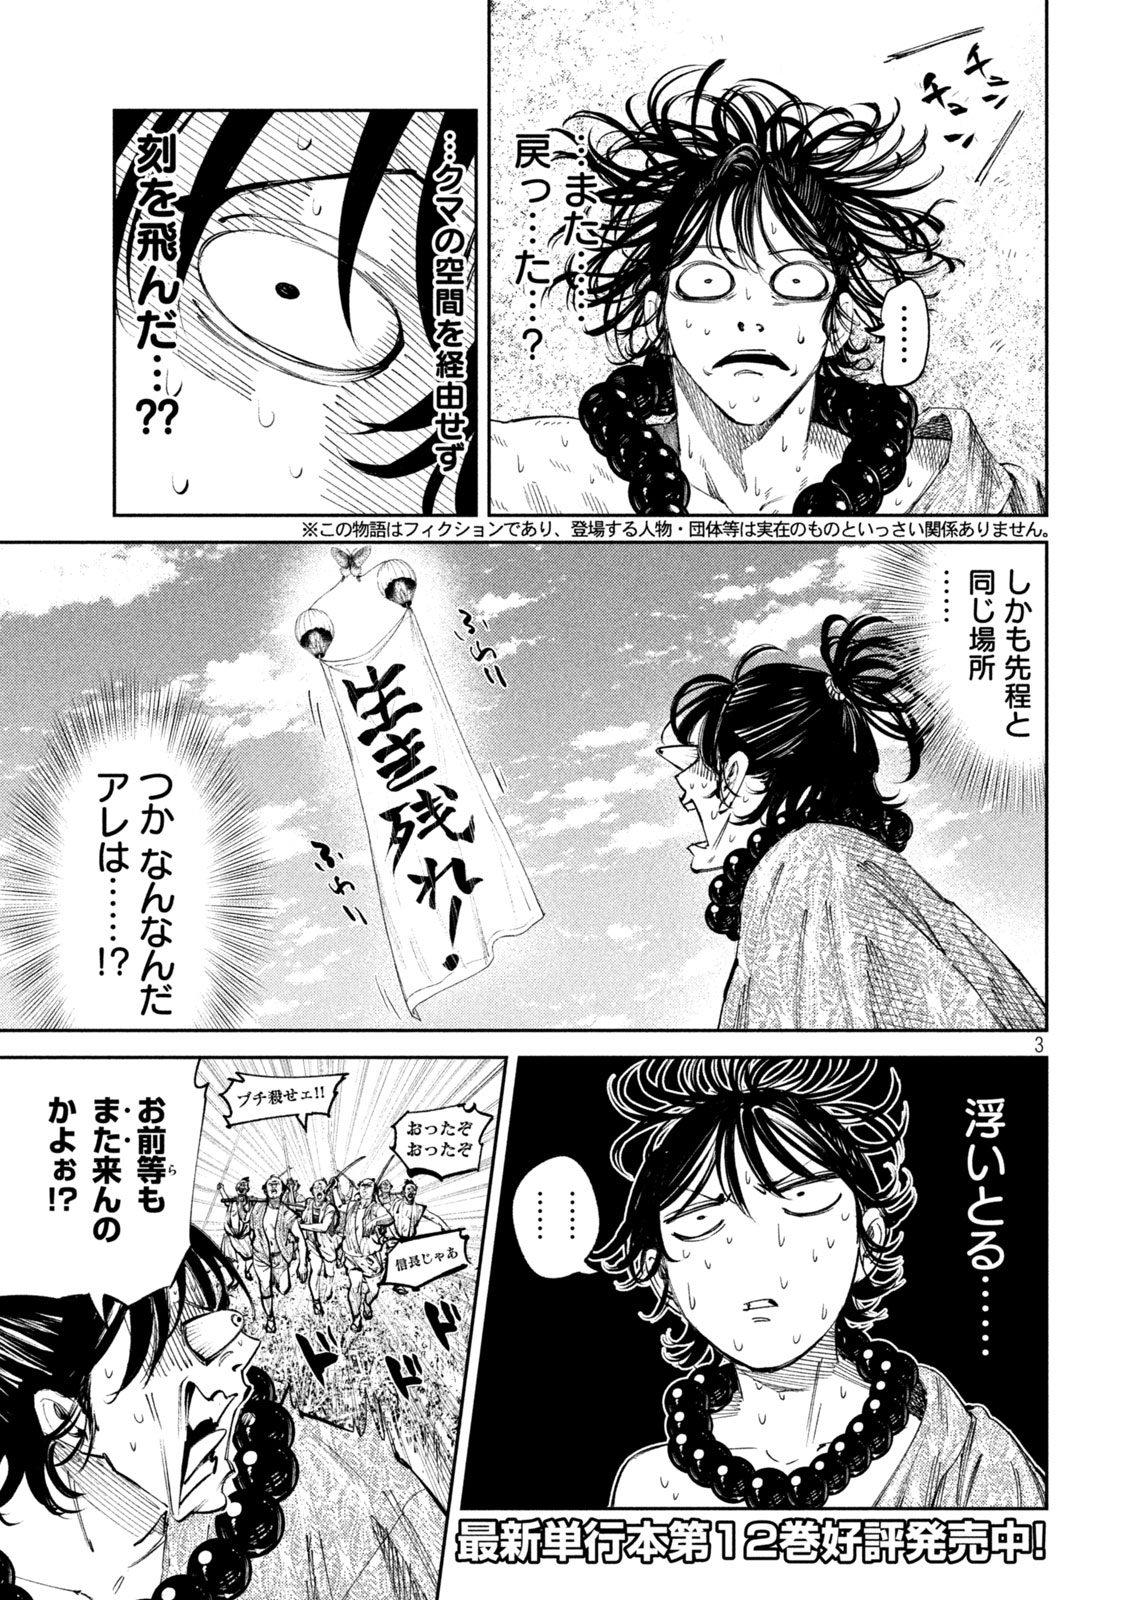 Nando toki o kurikaeshitemo Honnouji ga moerunjaga! - Chapter 120 - Page 3